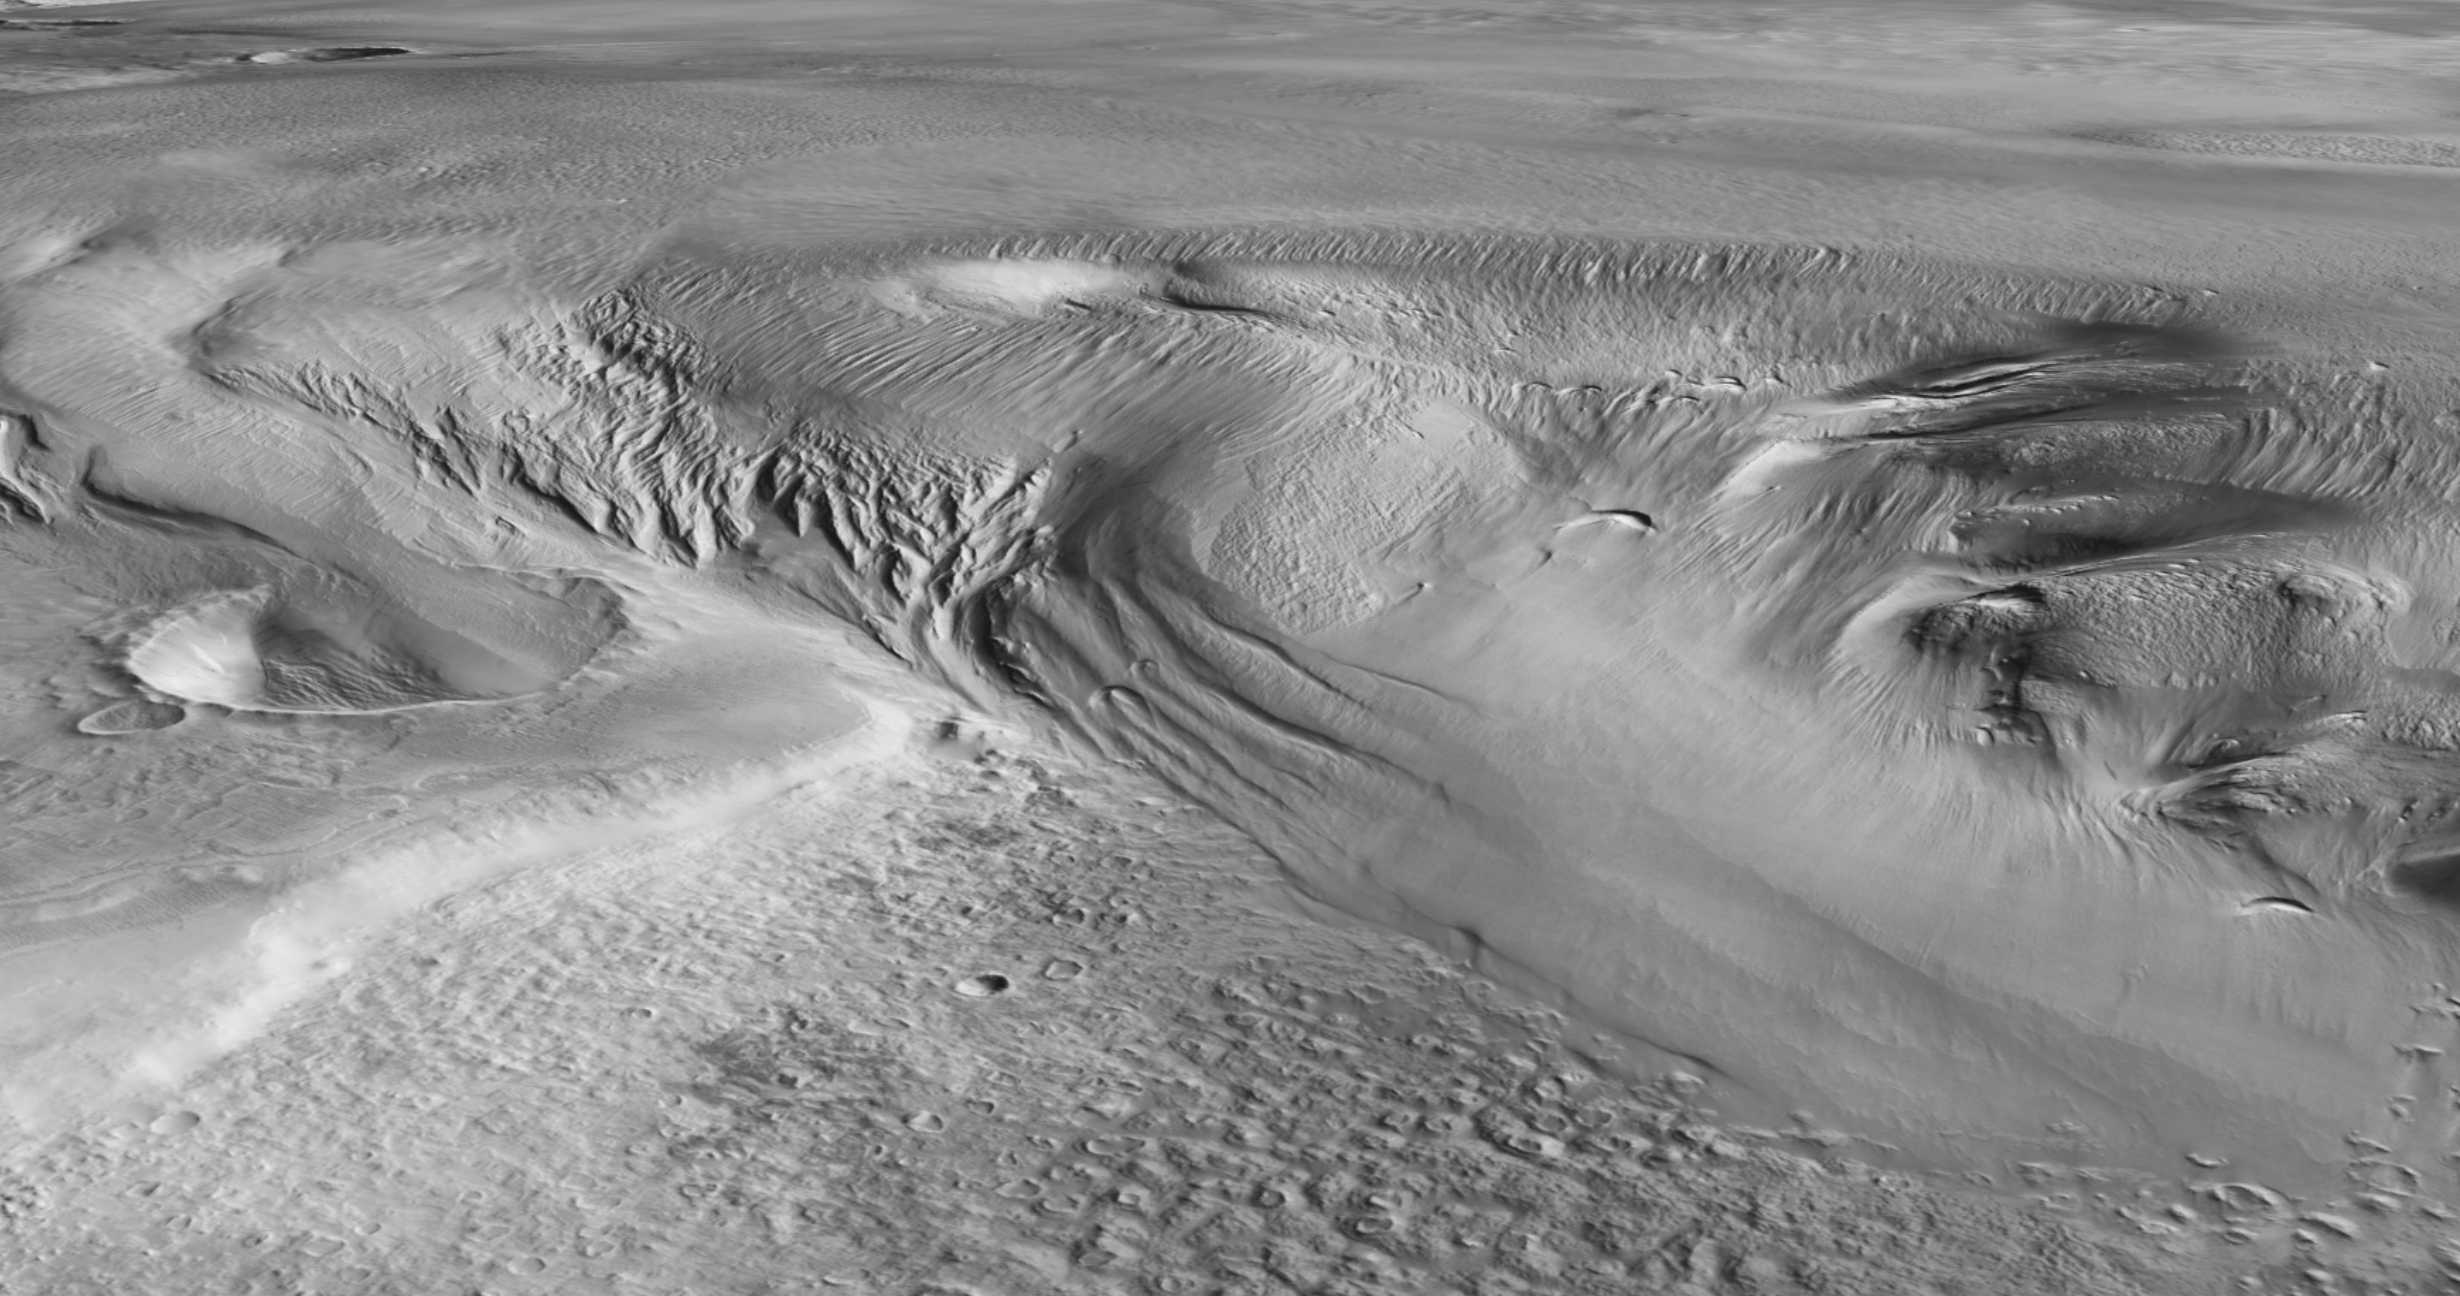 El hielo de agua enterrado en el ecuador de Marte tiene más de 3 kilómetros de espesor